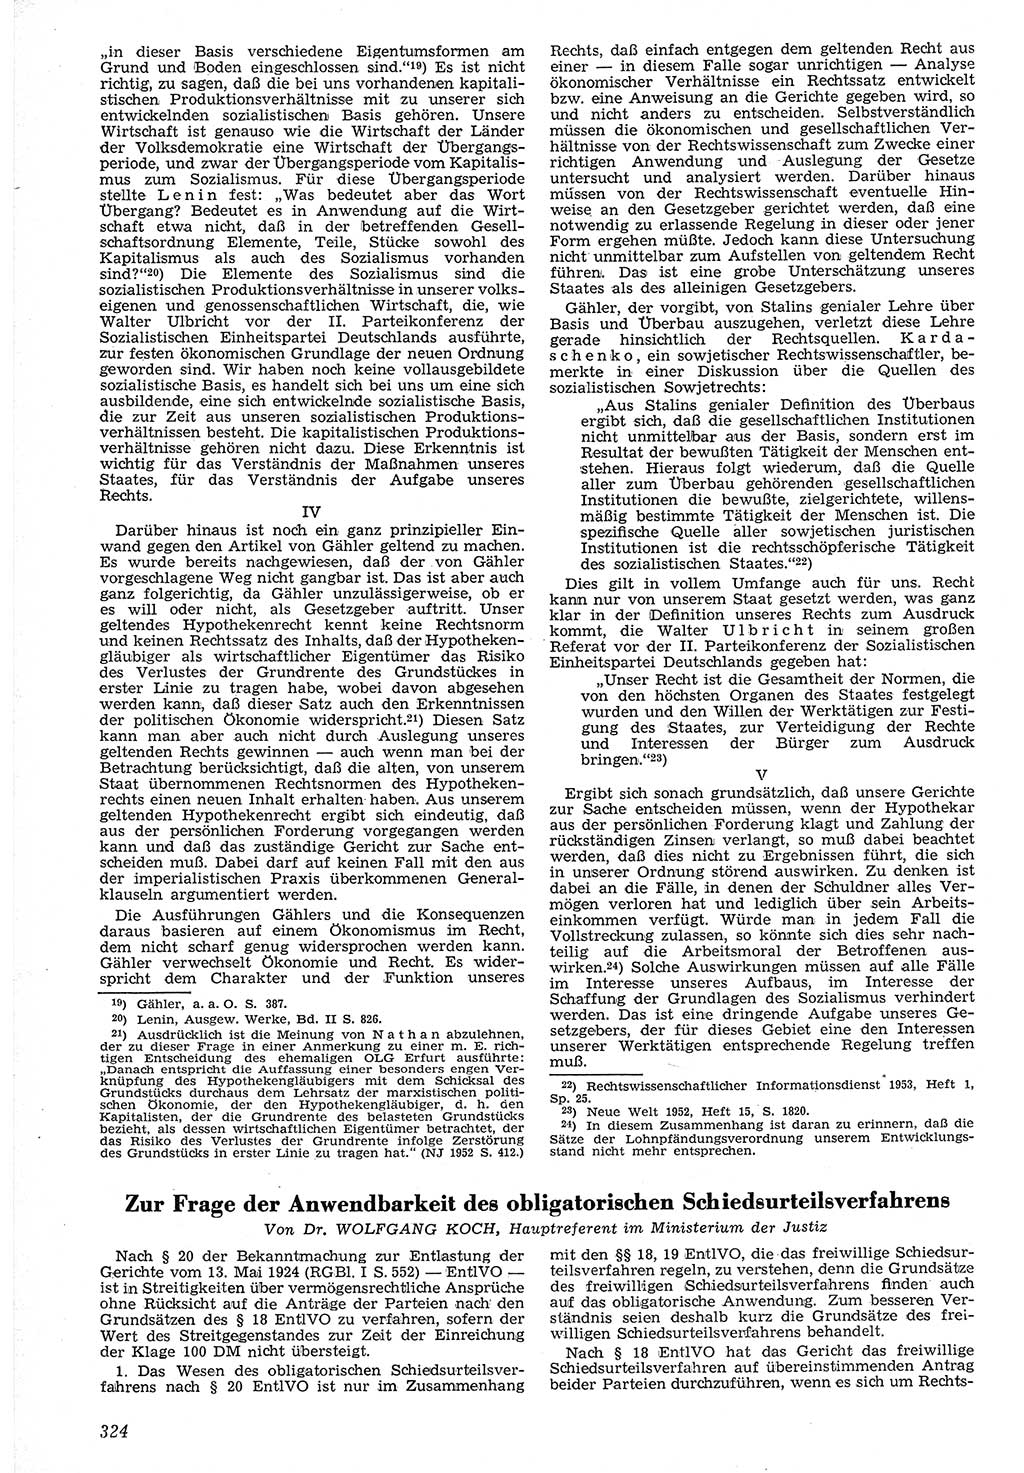 Neue Justiz (NJ), Zeitschrift für Recht und Rechtswissenschaft [Deutsche Demokratische Republik (DDR)], 7. Jahrgang 1953, Seite 324 (NJ DDR 1953, S. 324)